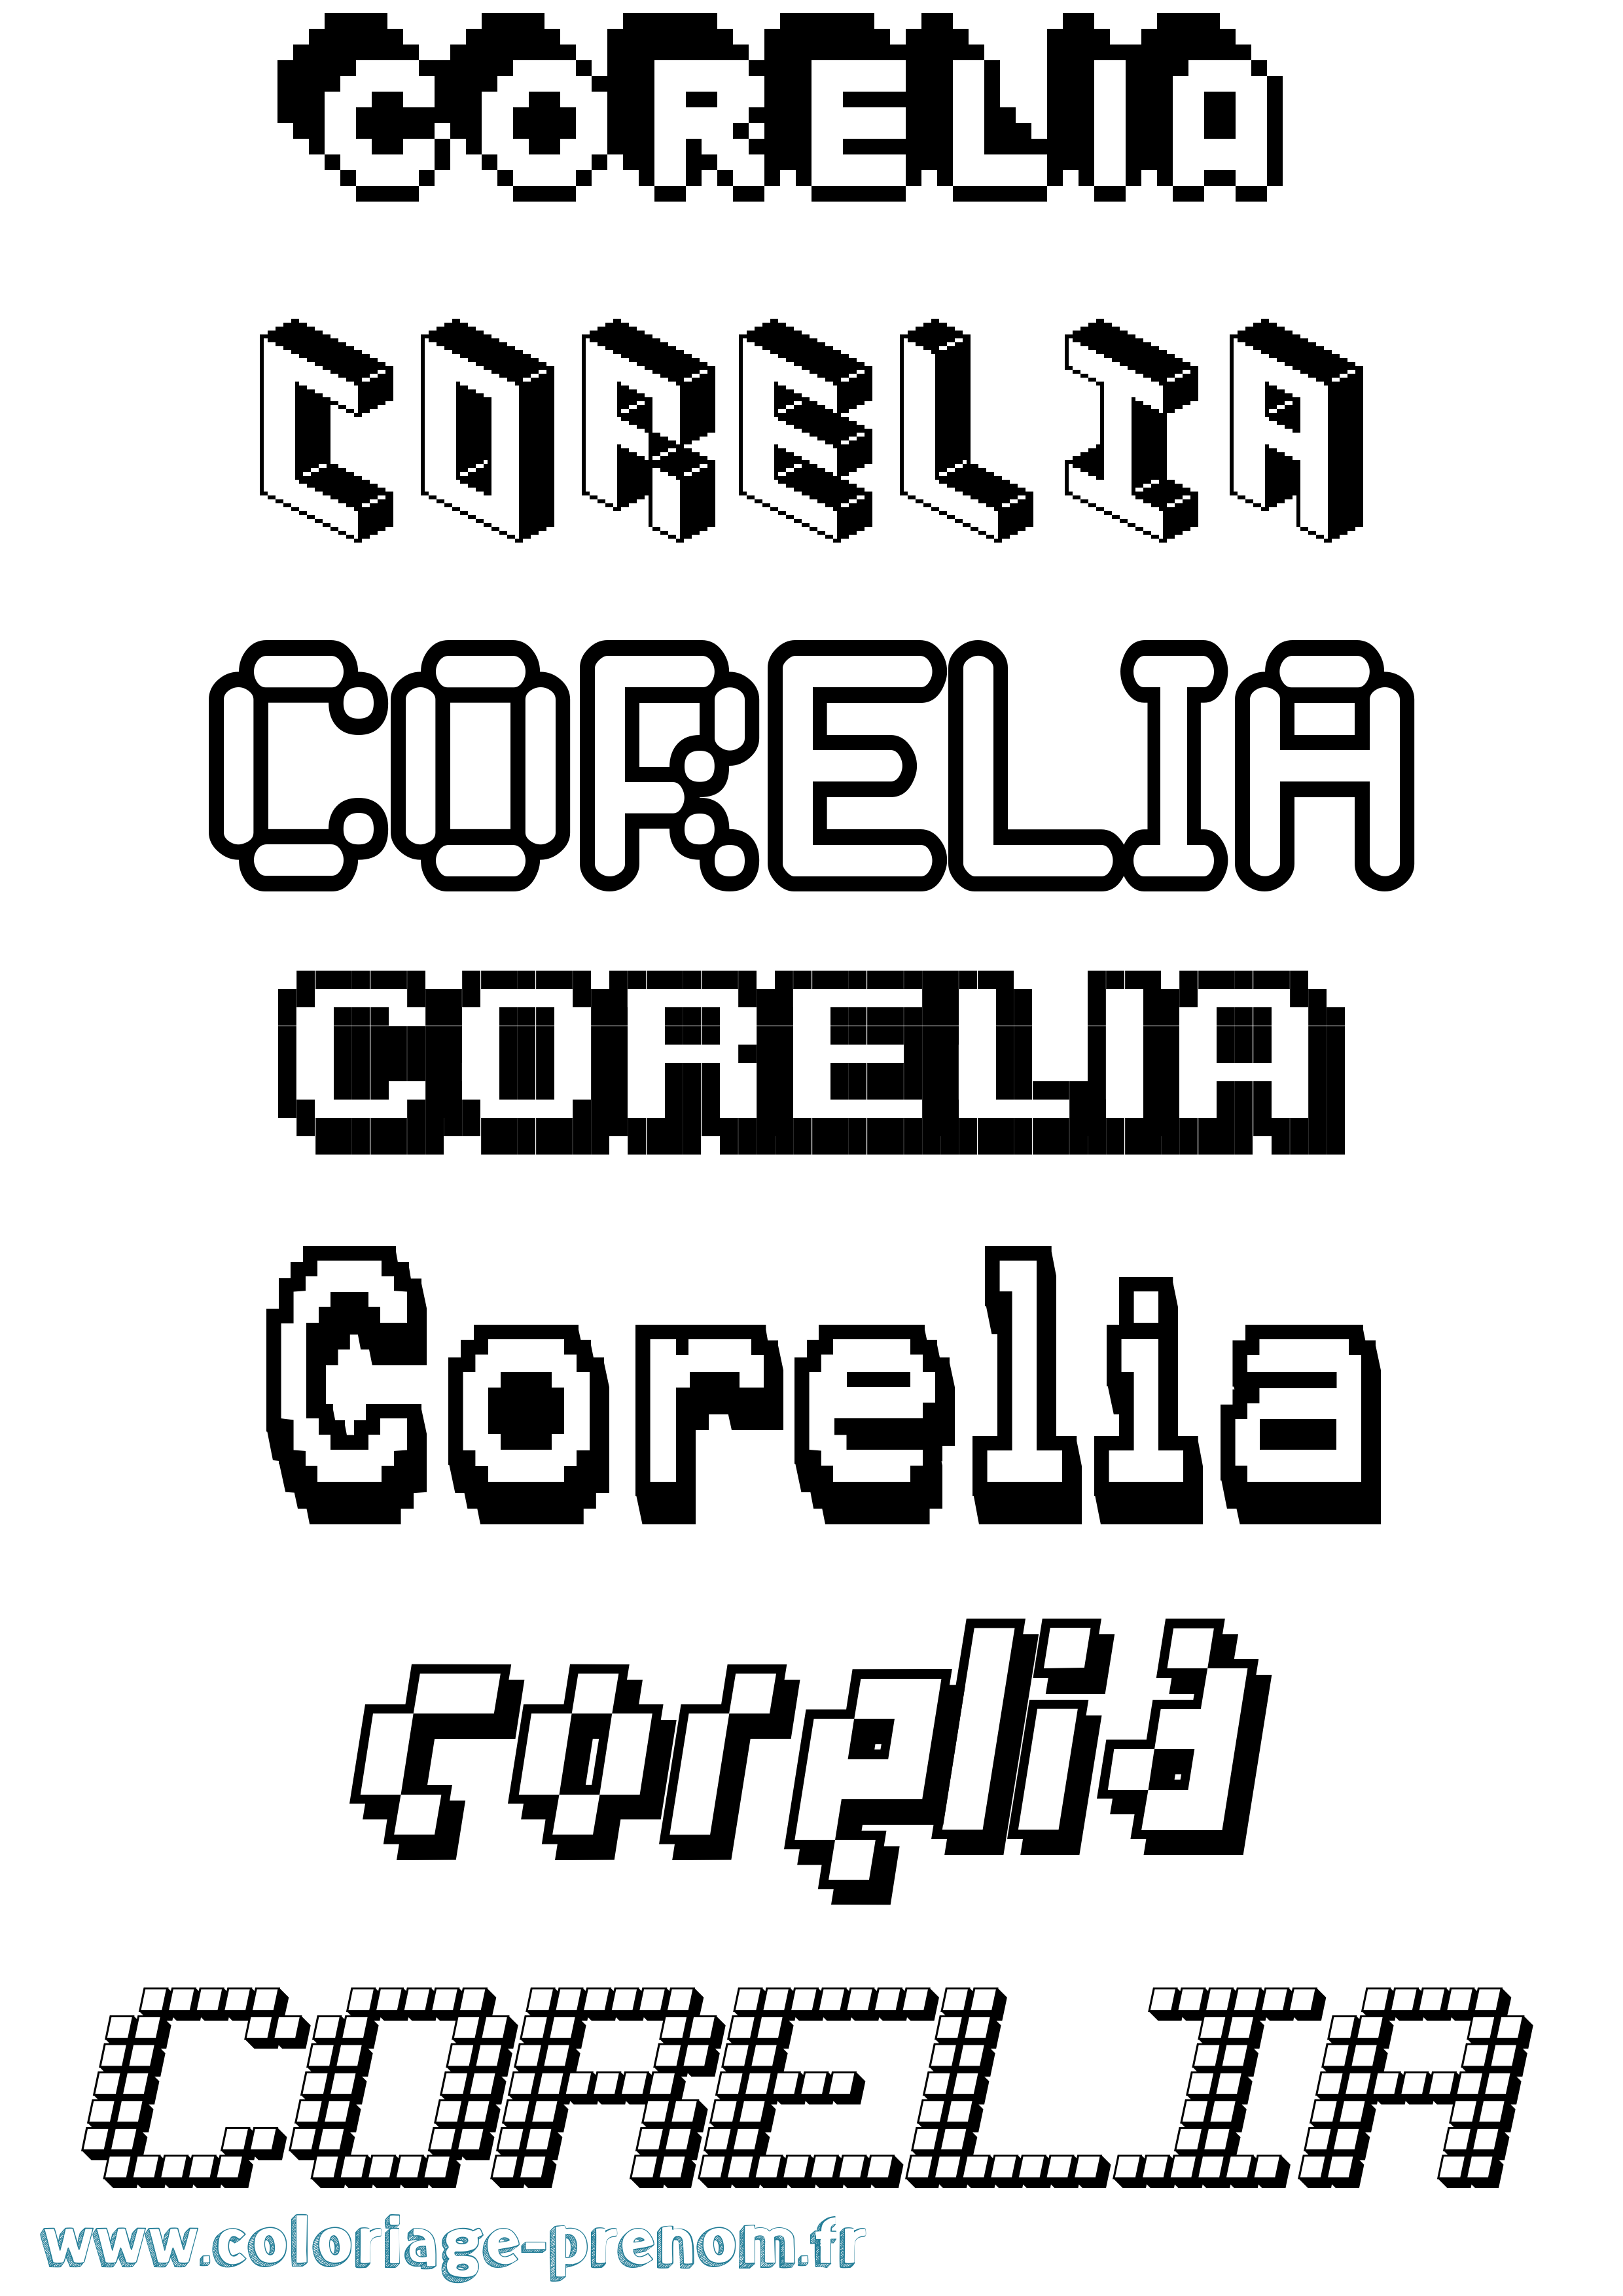 Coloriage prénom Corelia Pixel